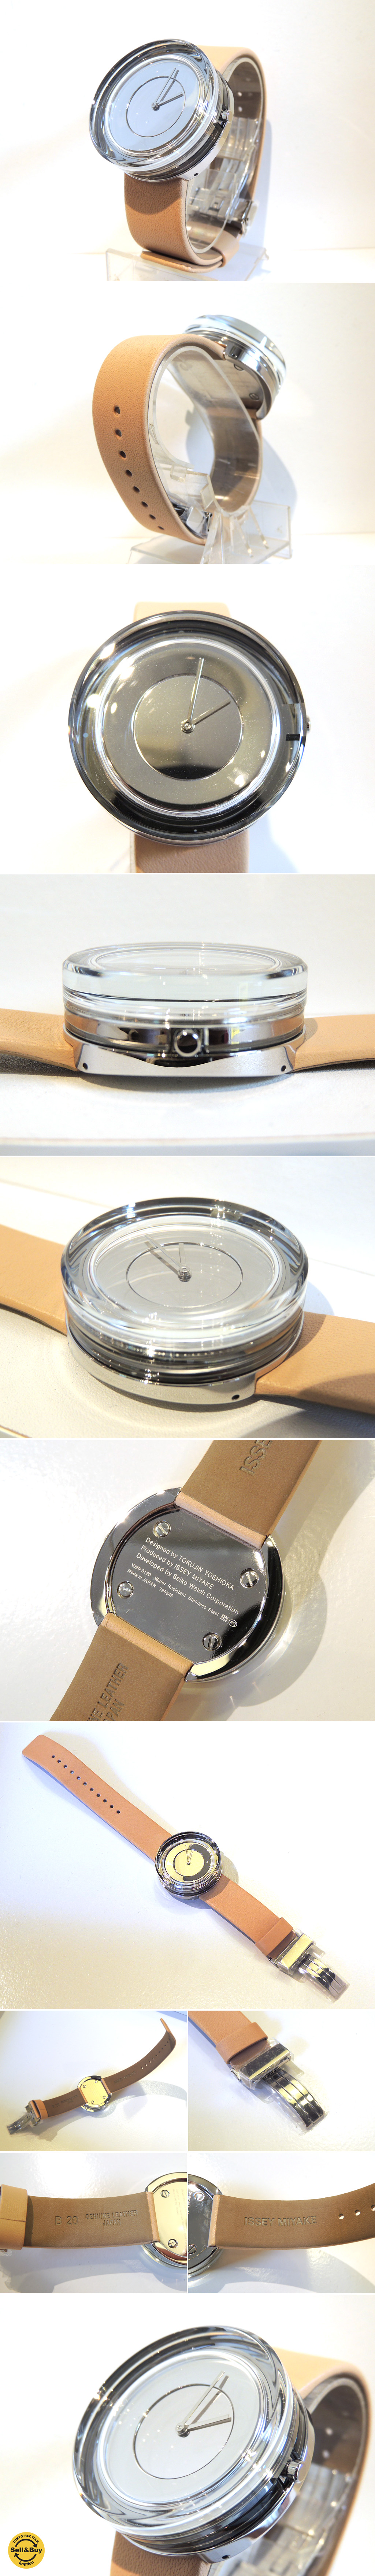 値下げ:ISSEY MIYAKE 【 Glass Watch 】イッセイミヤケ - 腕時計(アナログ)